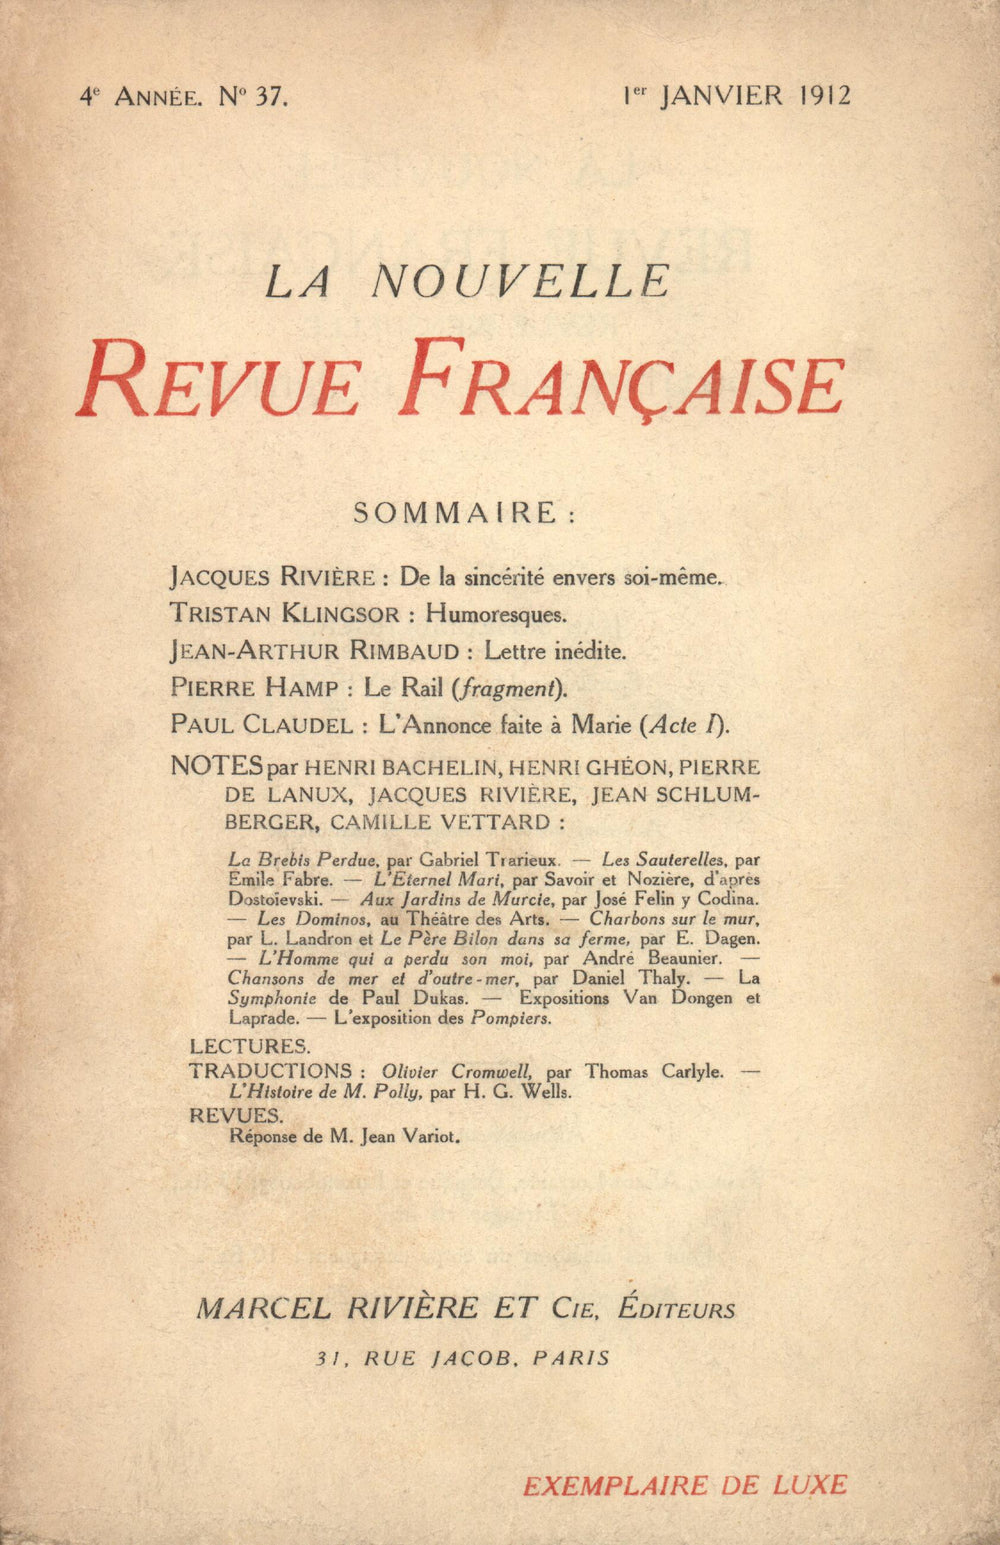 La Nouvelle Revue Française N' 37 (Janvier 1912)